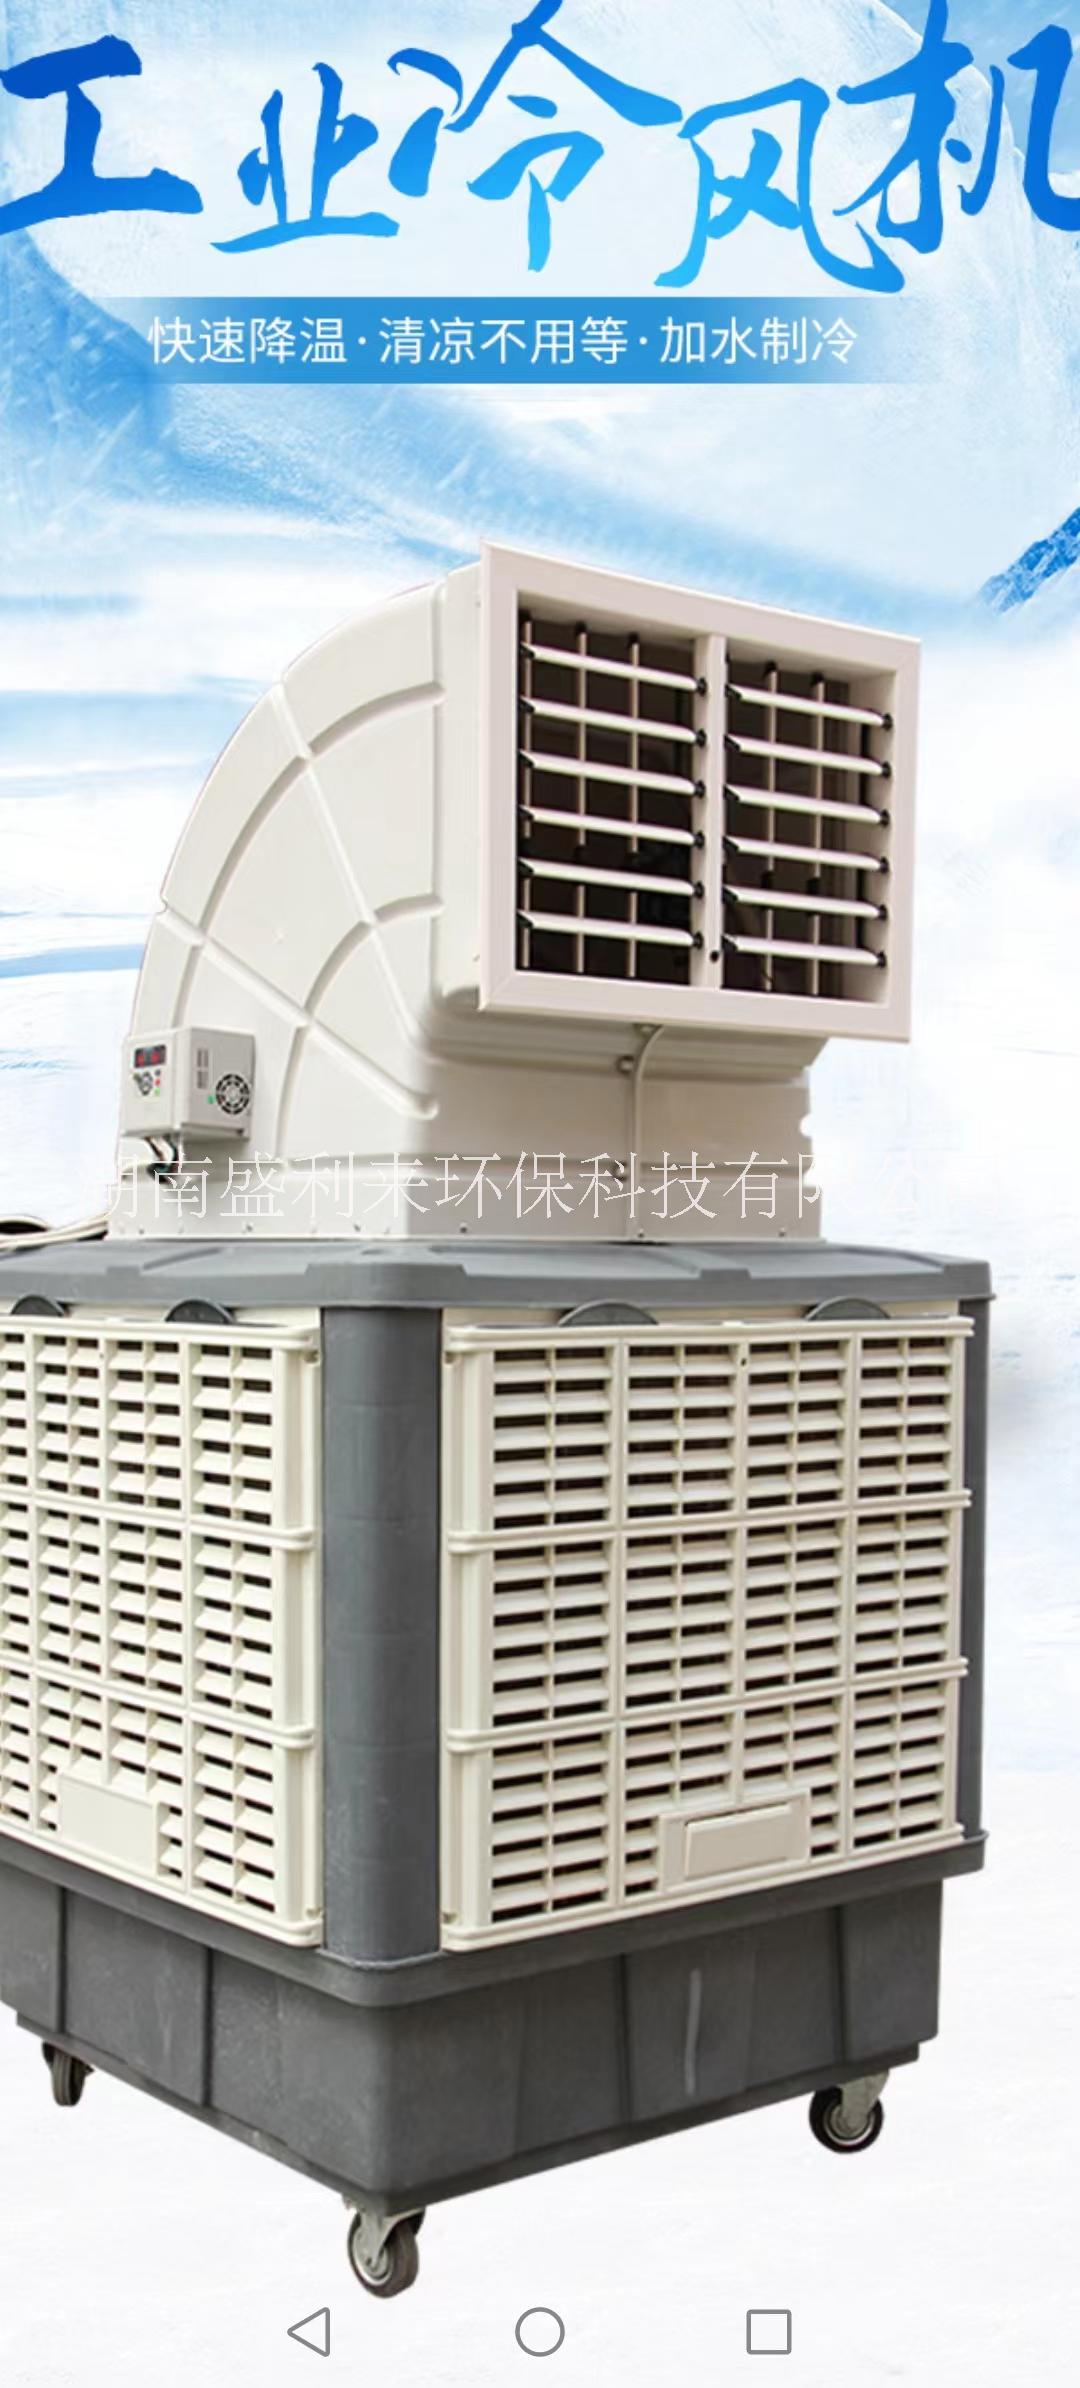 环保空调/蒸发式水冷空调 SLL-18环保空调/蒸发式水冷空调